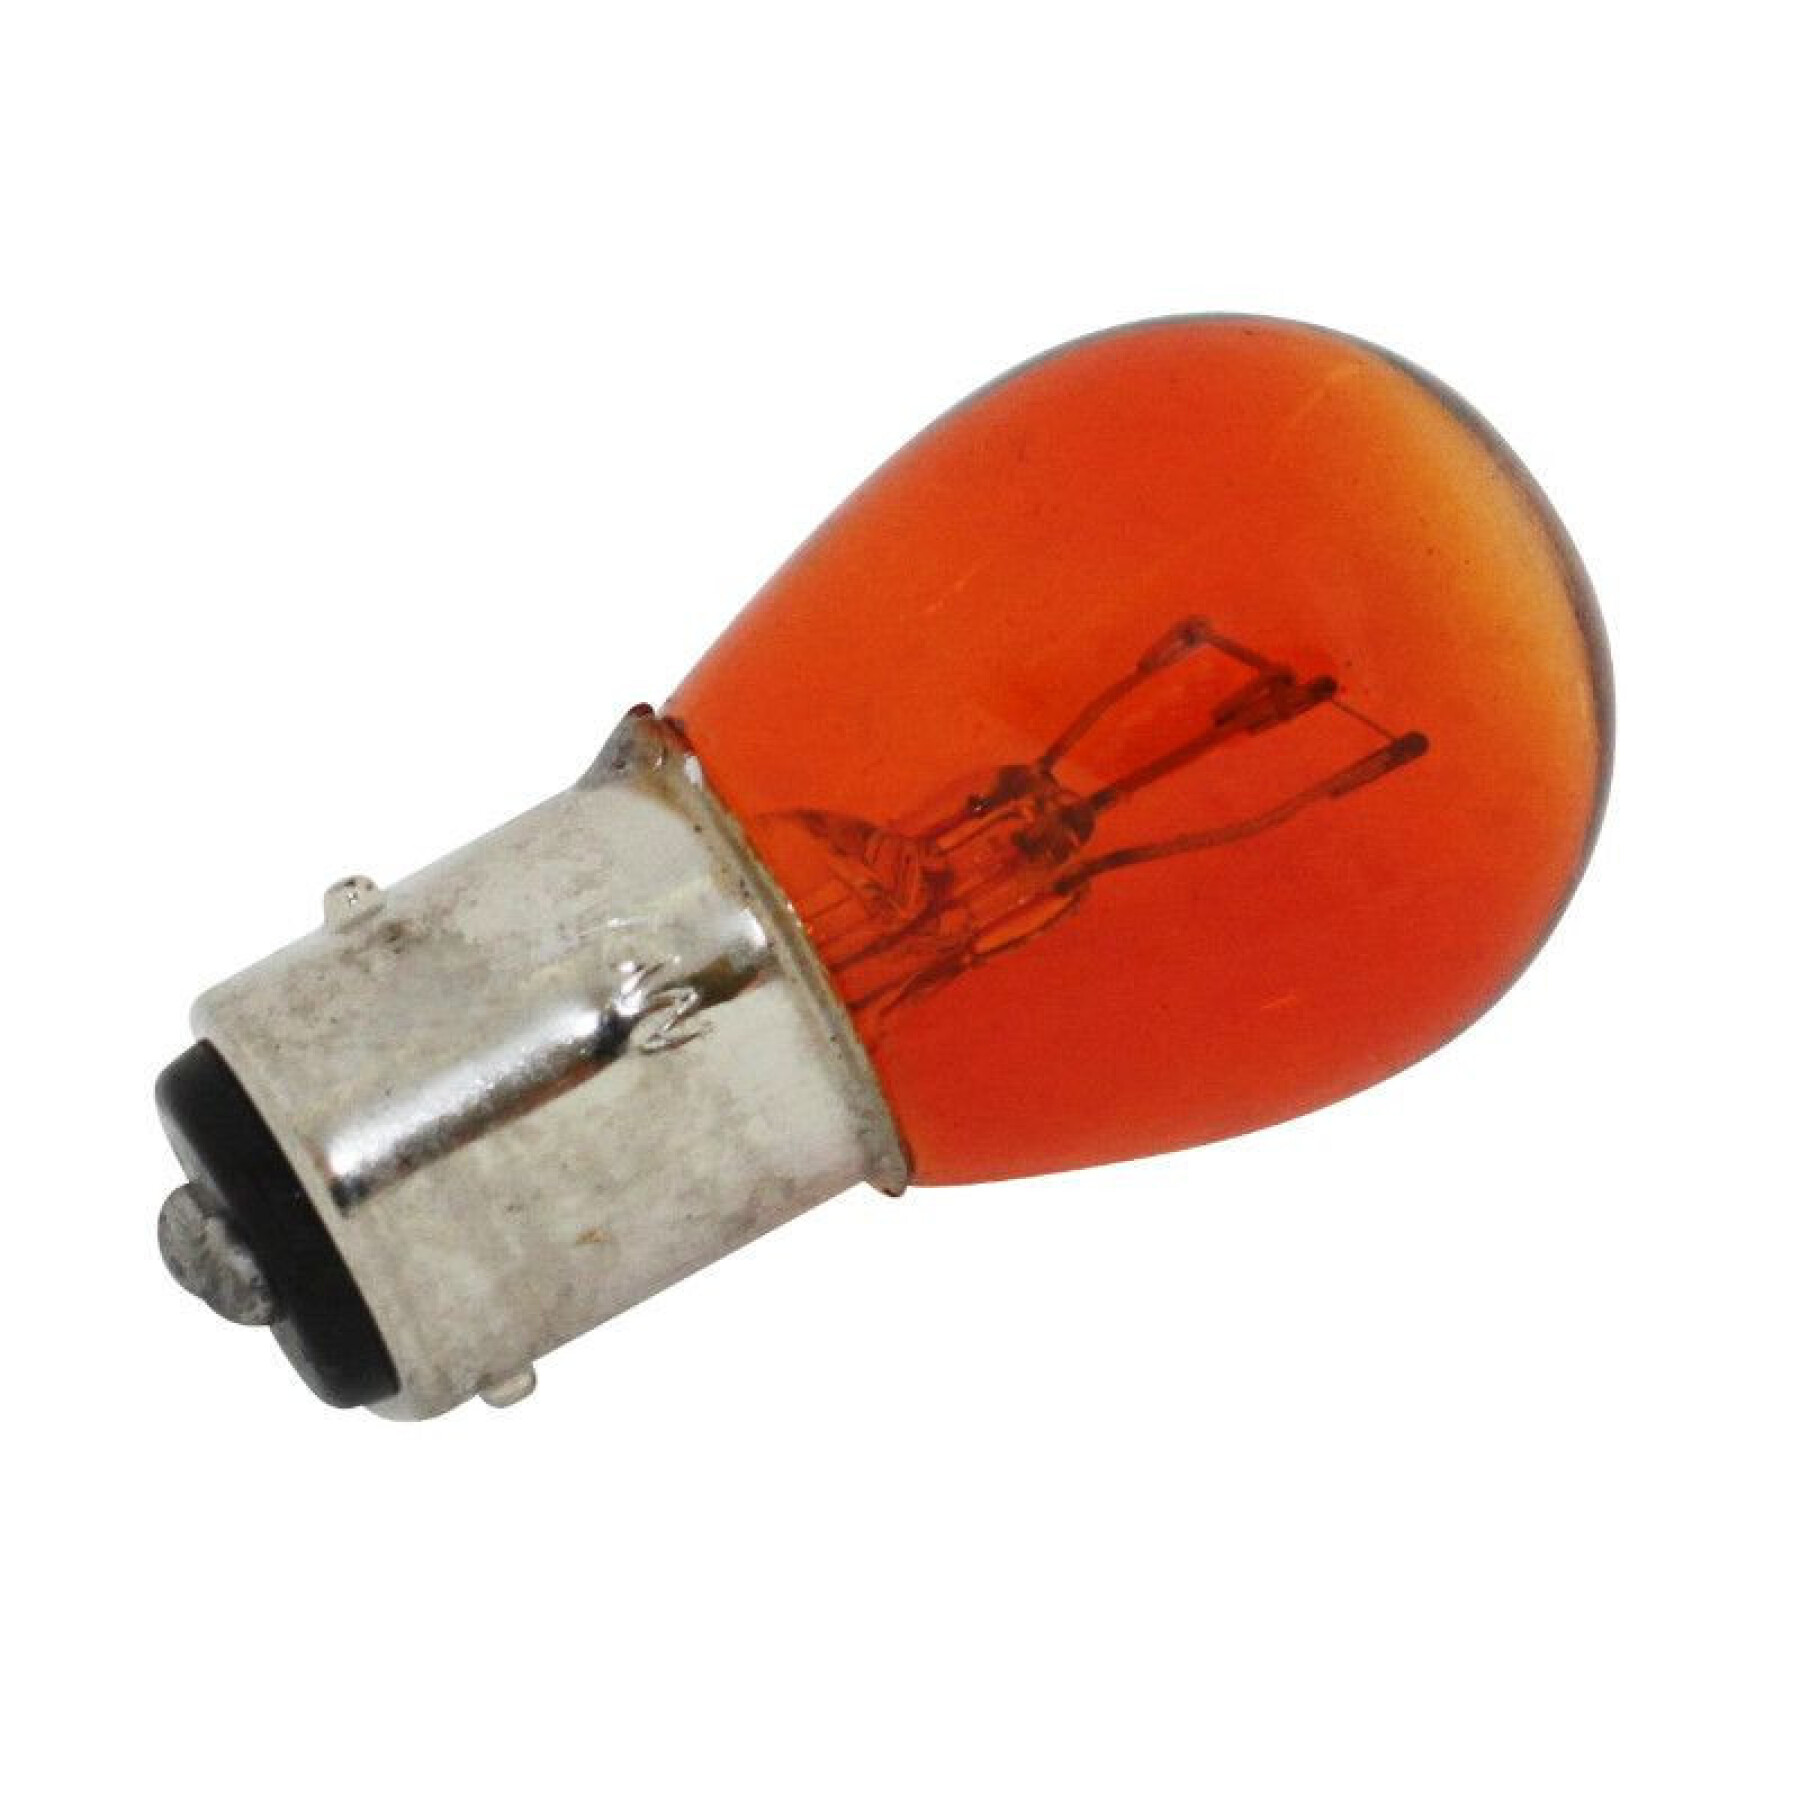 Ampoule clignotant P21/5W à l'unité